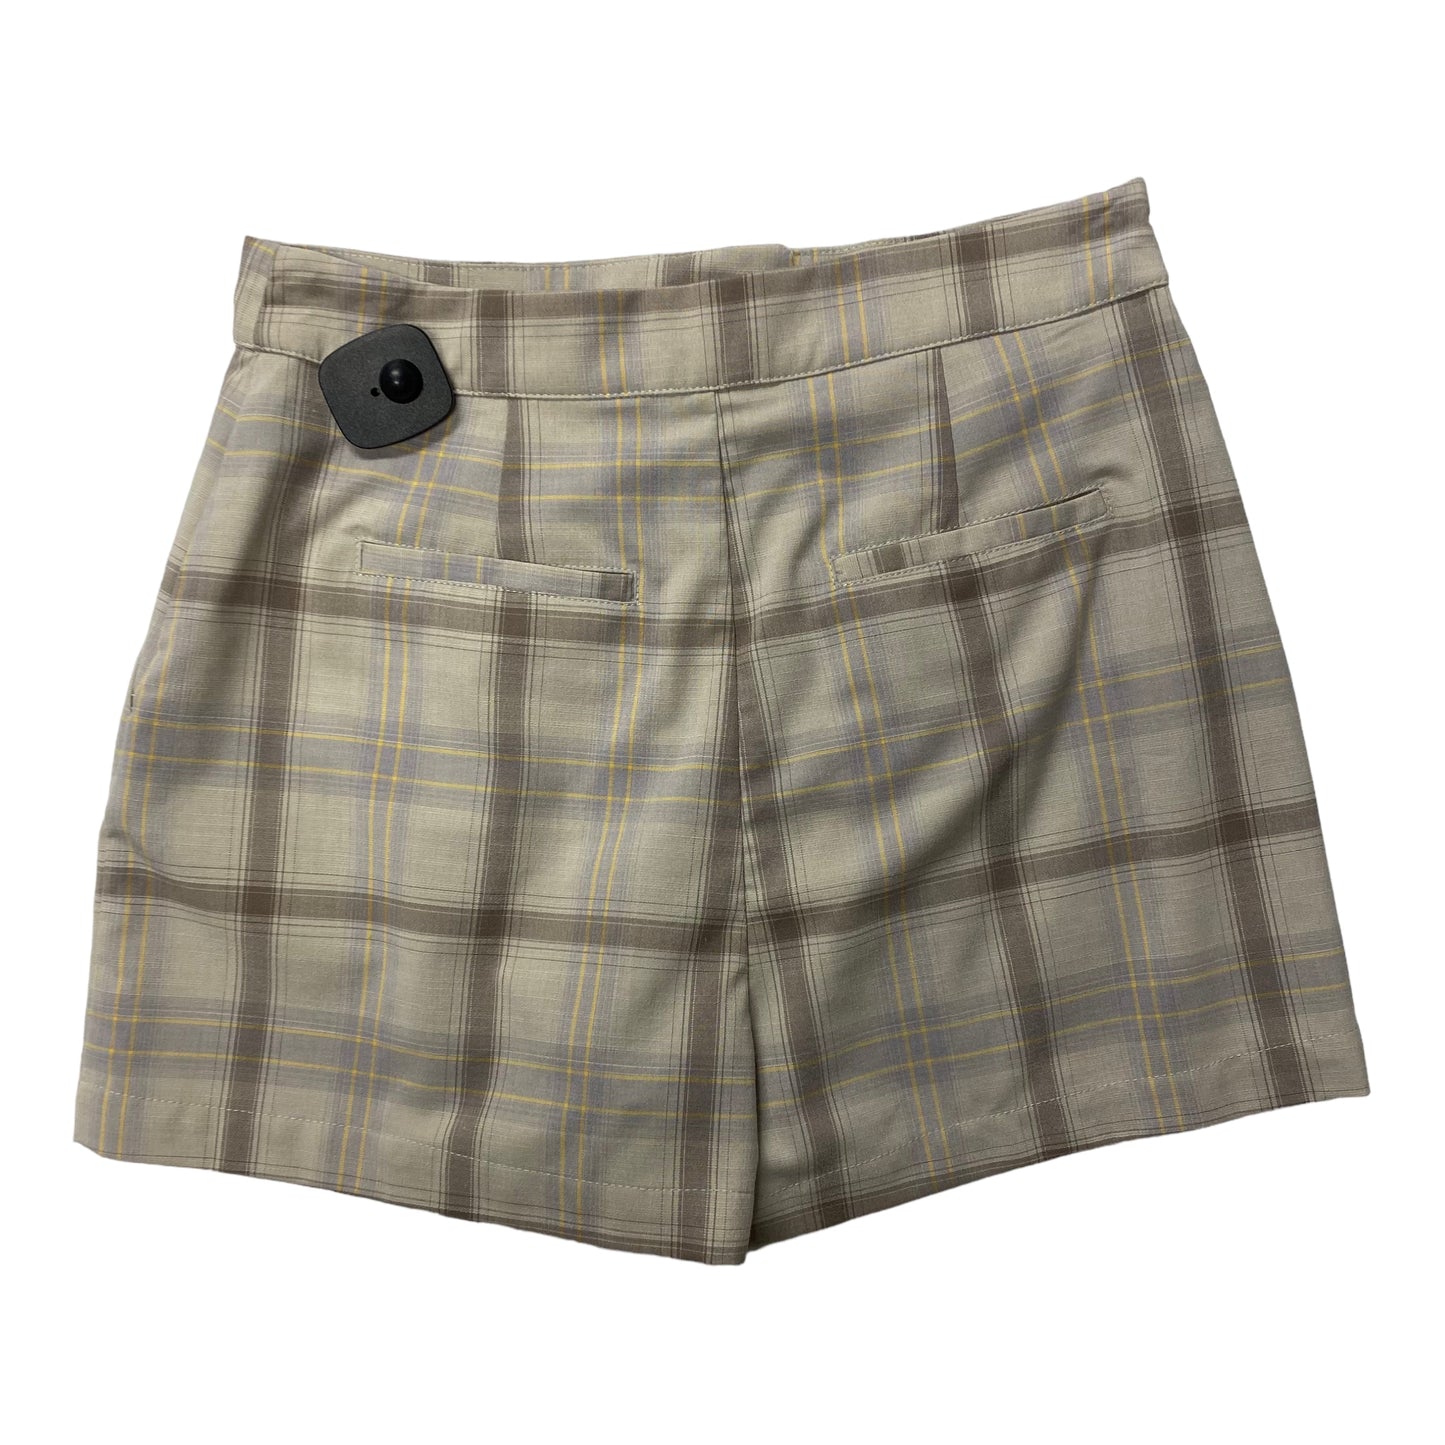 Plaid Pattern Shorts 1.state, Size 4